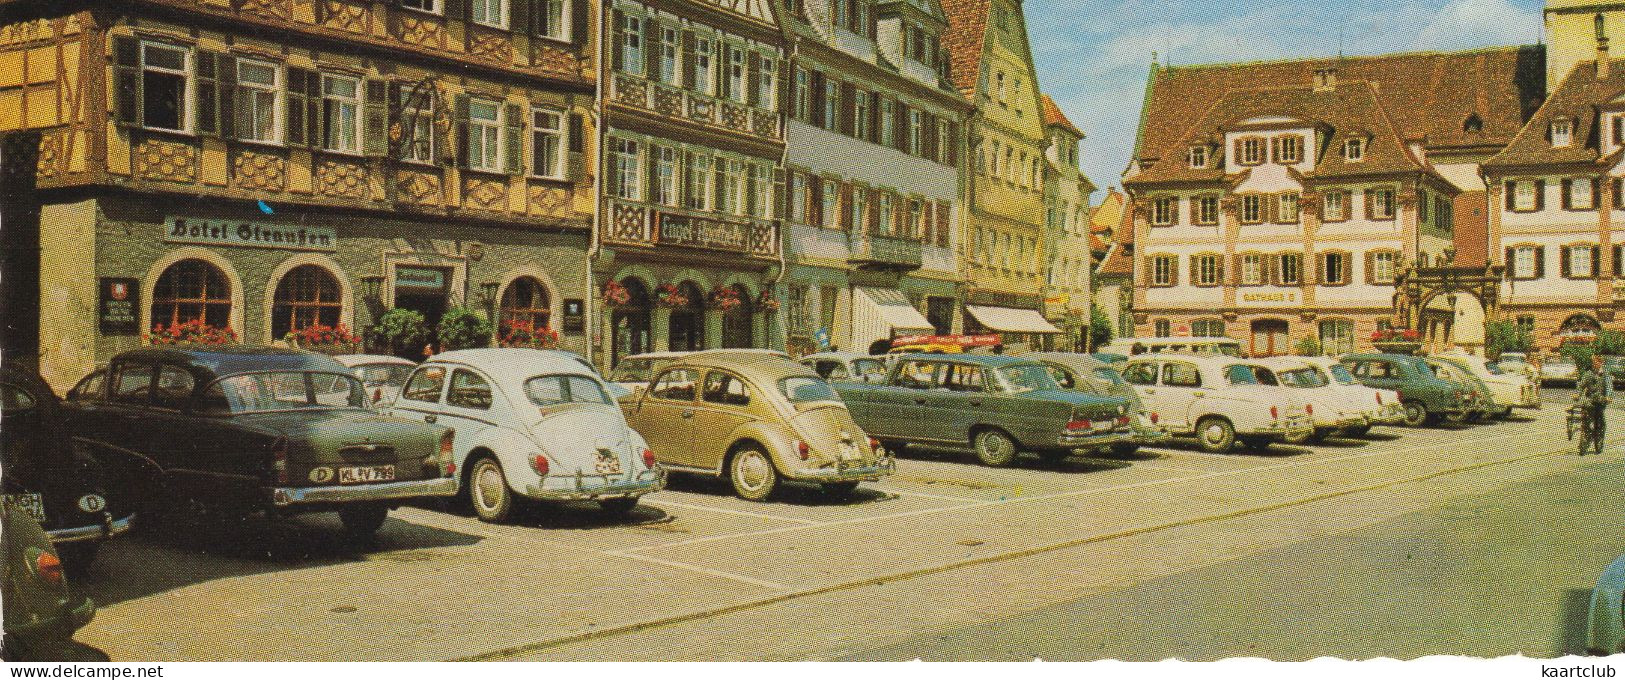 Bad Mergentheim: OPEL REKORD P1, VW 1200 KÄFER/COX, MERCEDES W111, W105, FORD TAUNUS 17M P3 - Marktplatz (Deutschland) - Turismo